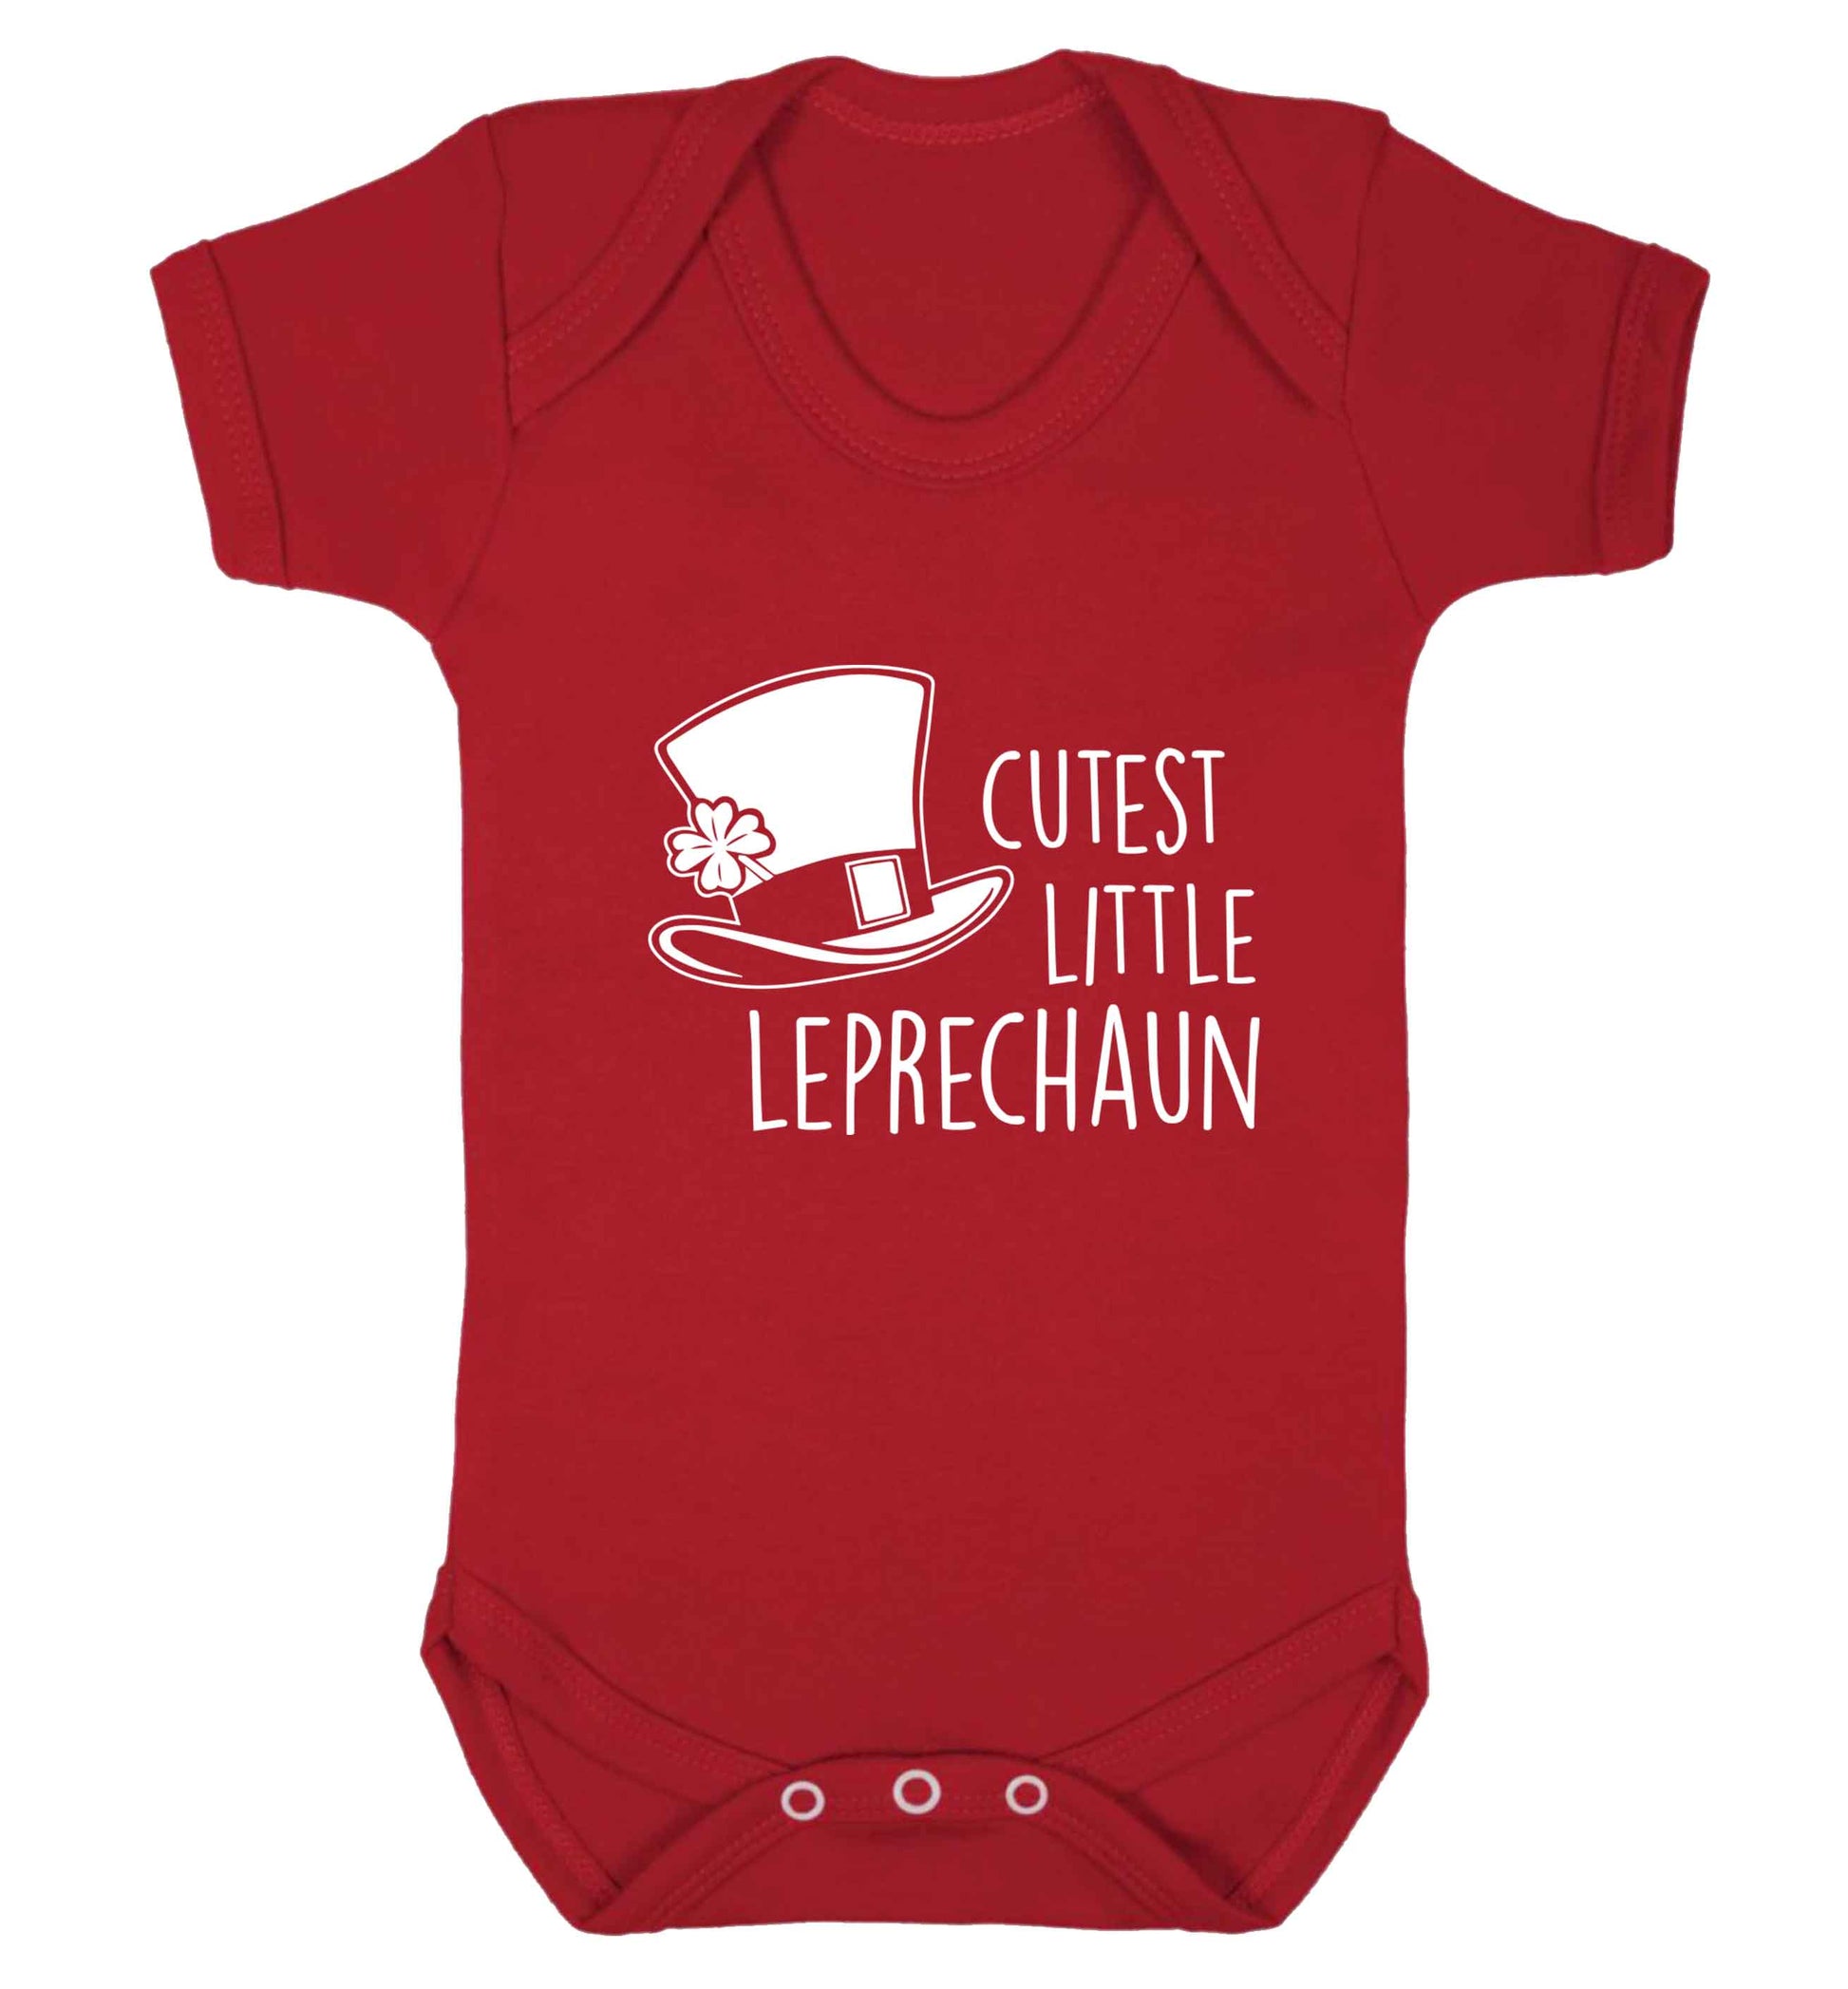 Cutest little leprechaun baby vest red 18-24 months